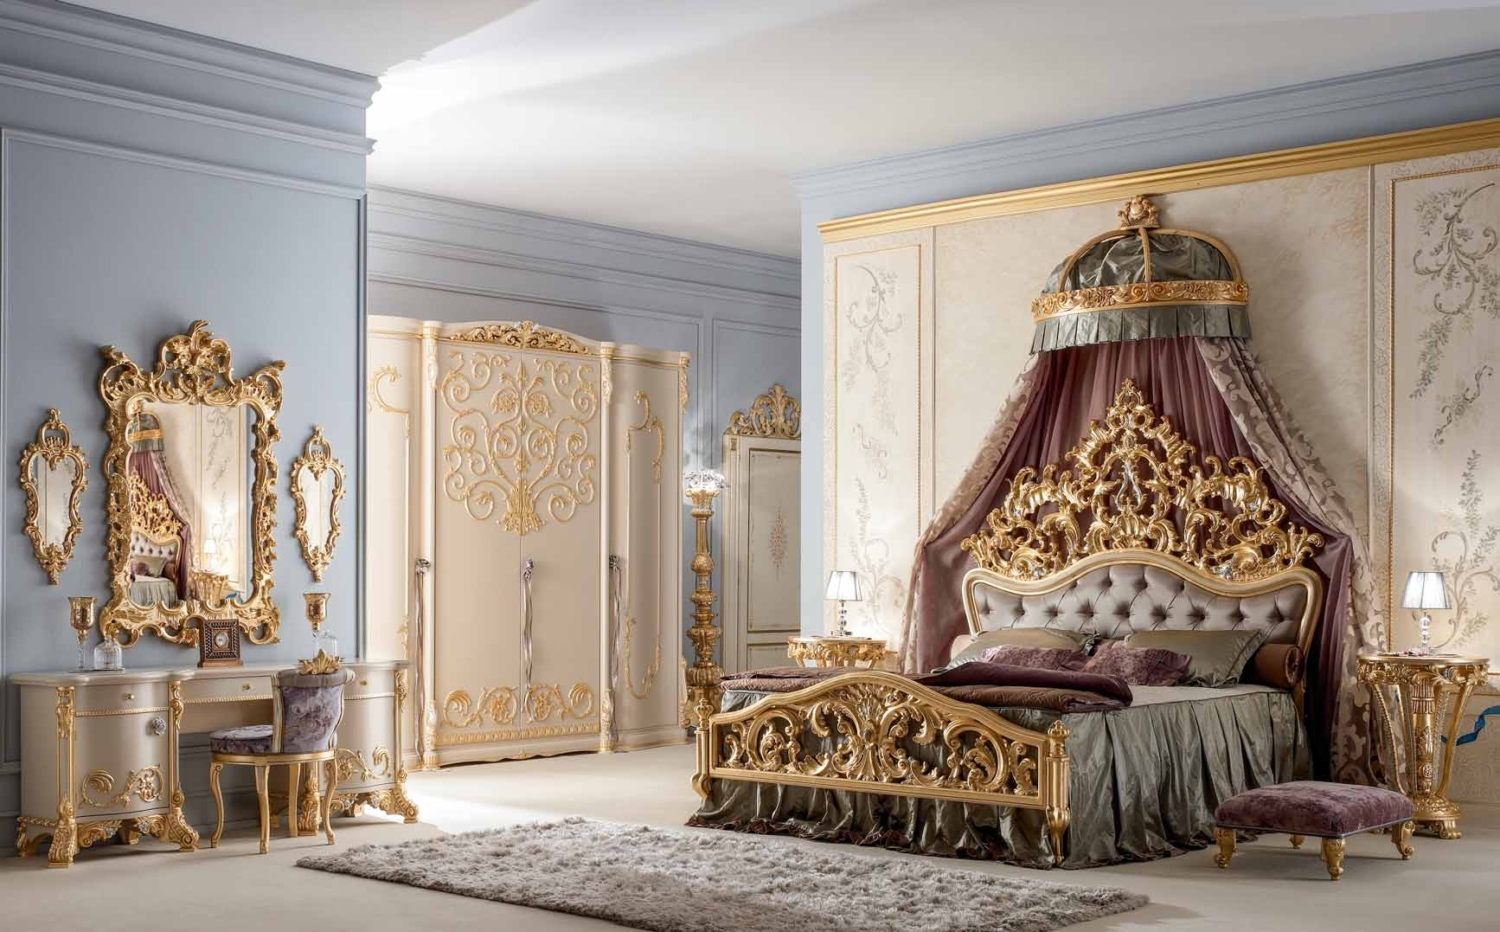 Обои в стиле барокко в интерьере спальни